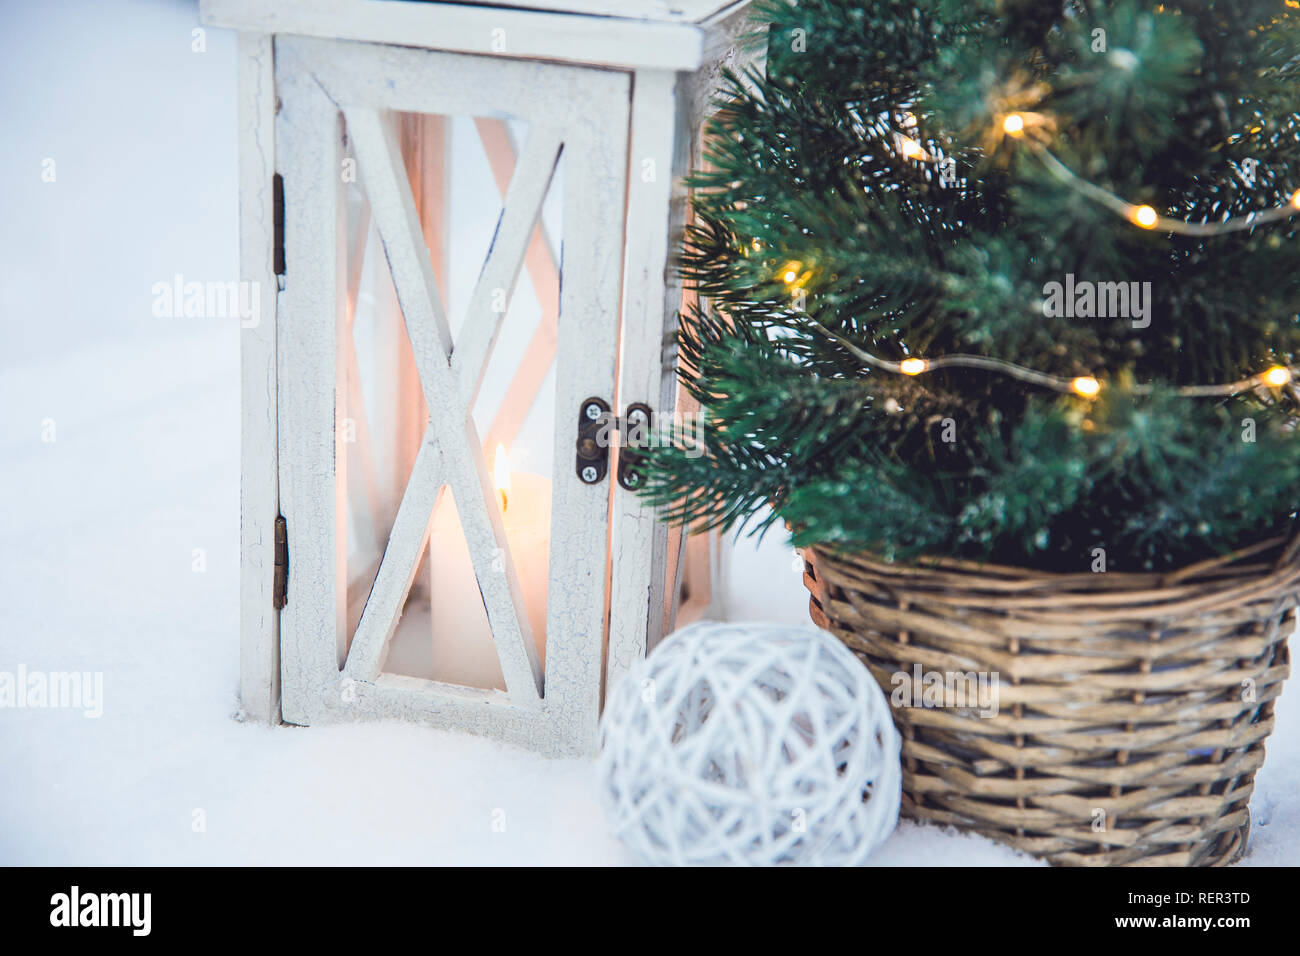 Lanterne en bois blanc avec des chandelles de cire blanche et petit sapin de Noël avec des lumières led micro en rotin brun pot de fleur dans la neige, sapins enneigés Banque D'Images